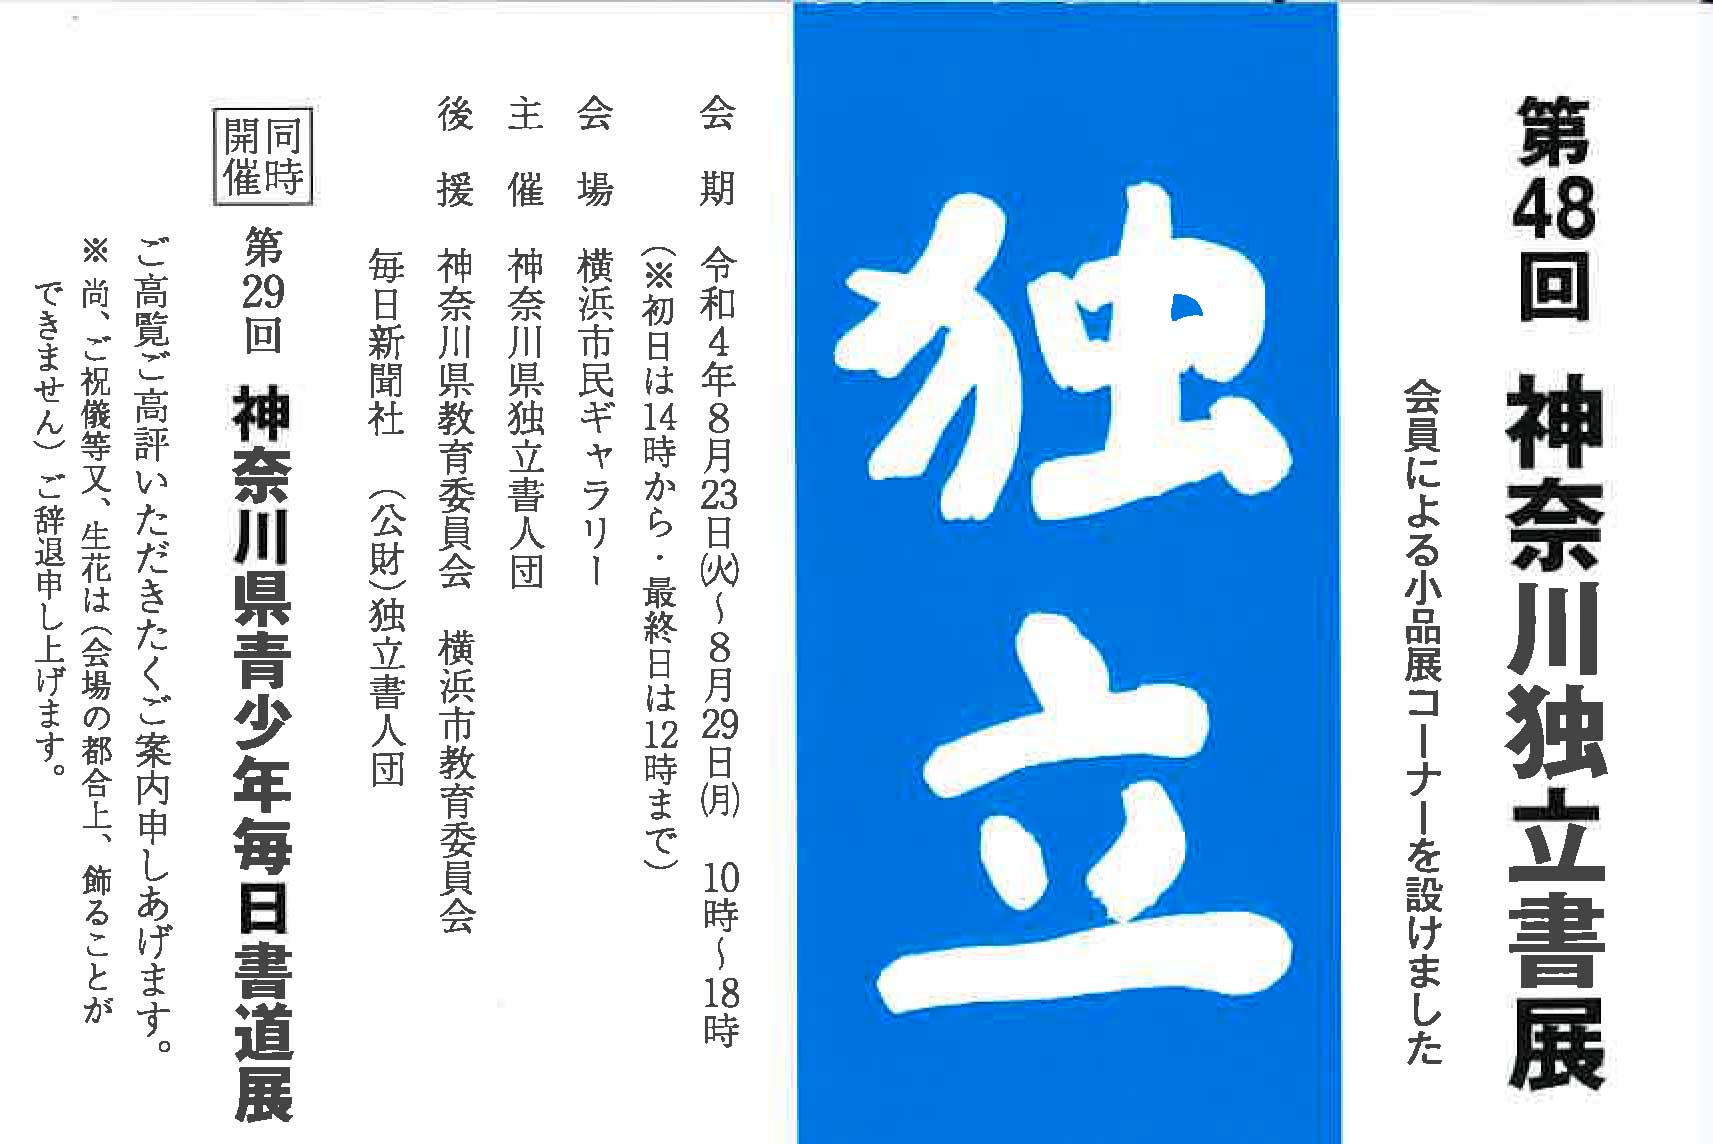 【展覧会情報】第48回 神奈川独立書展